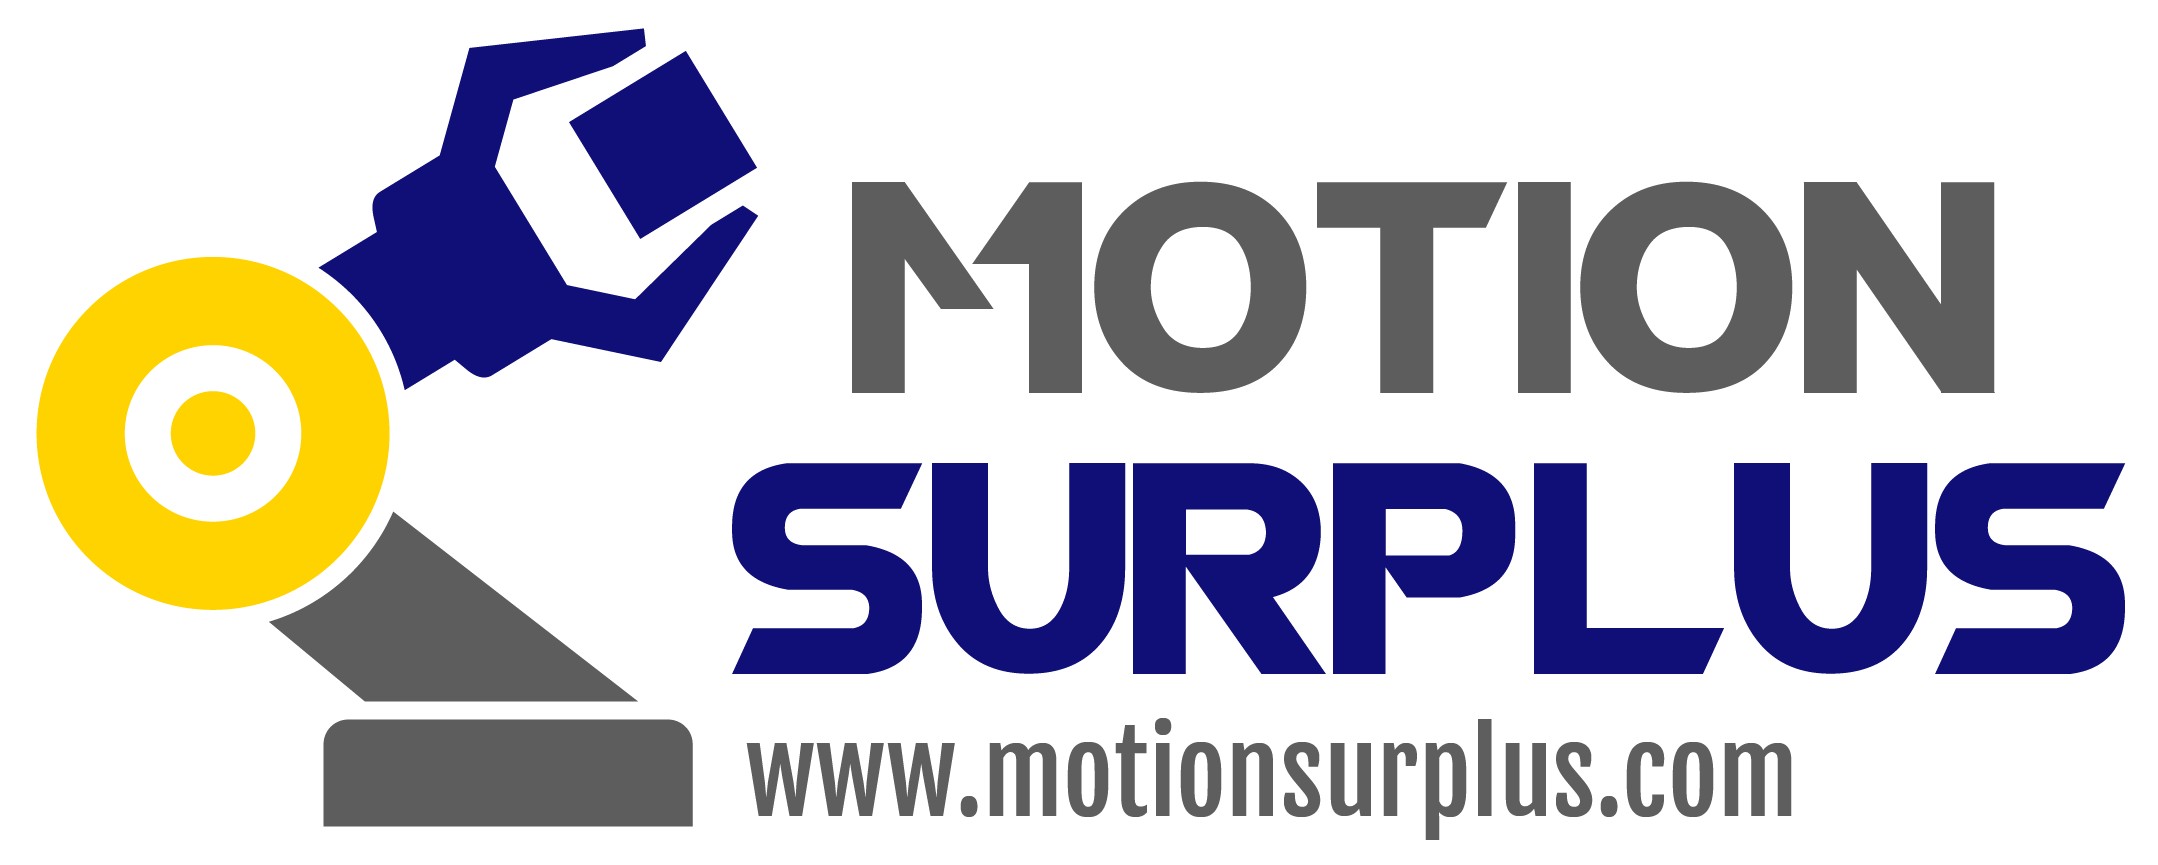 MotionSurplus 